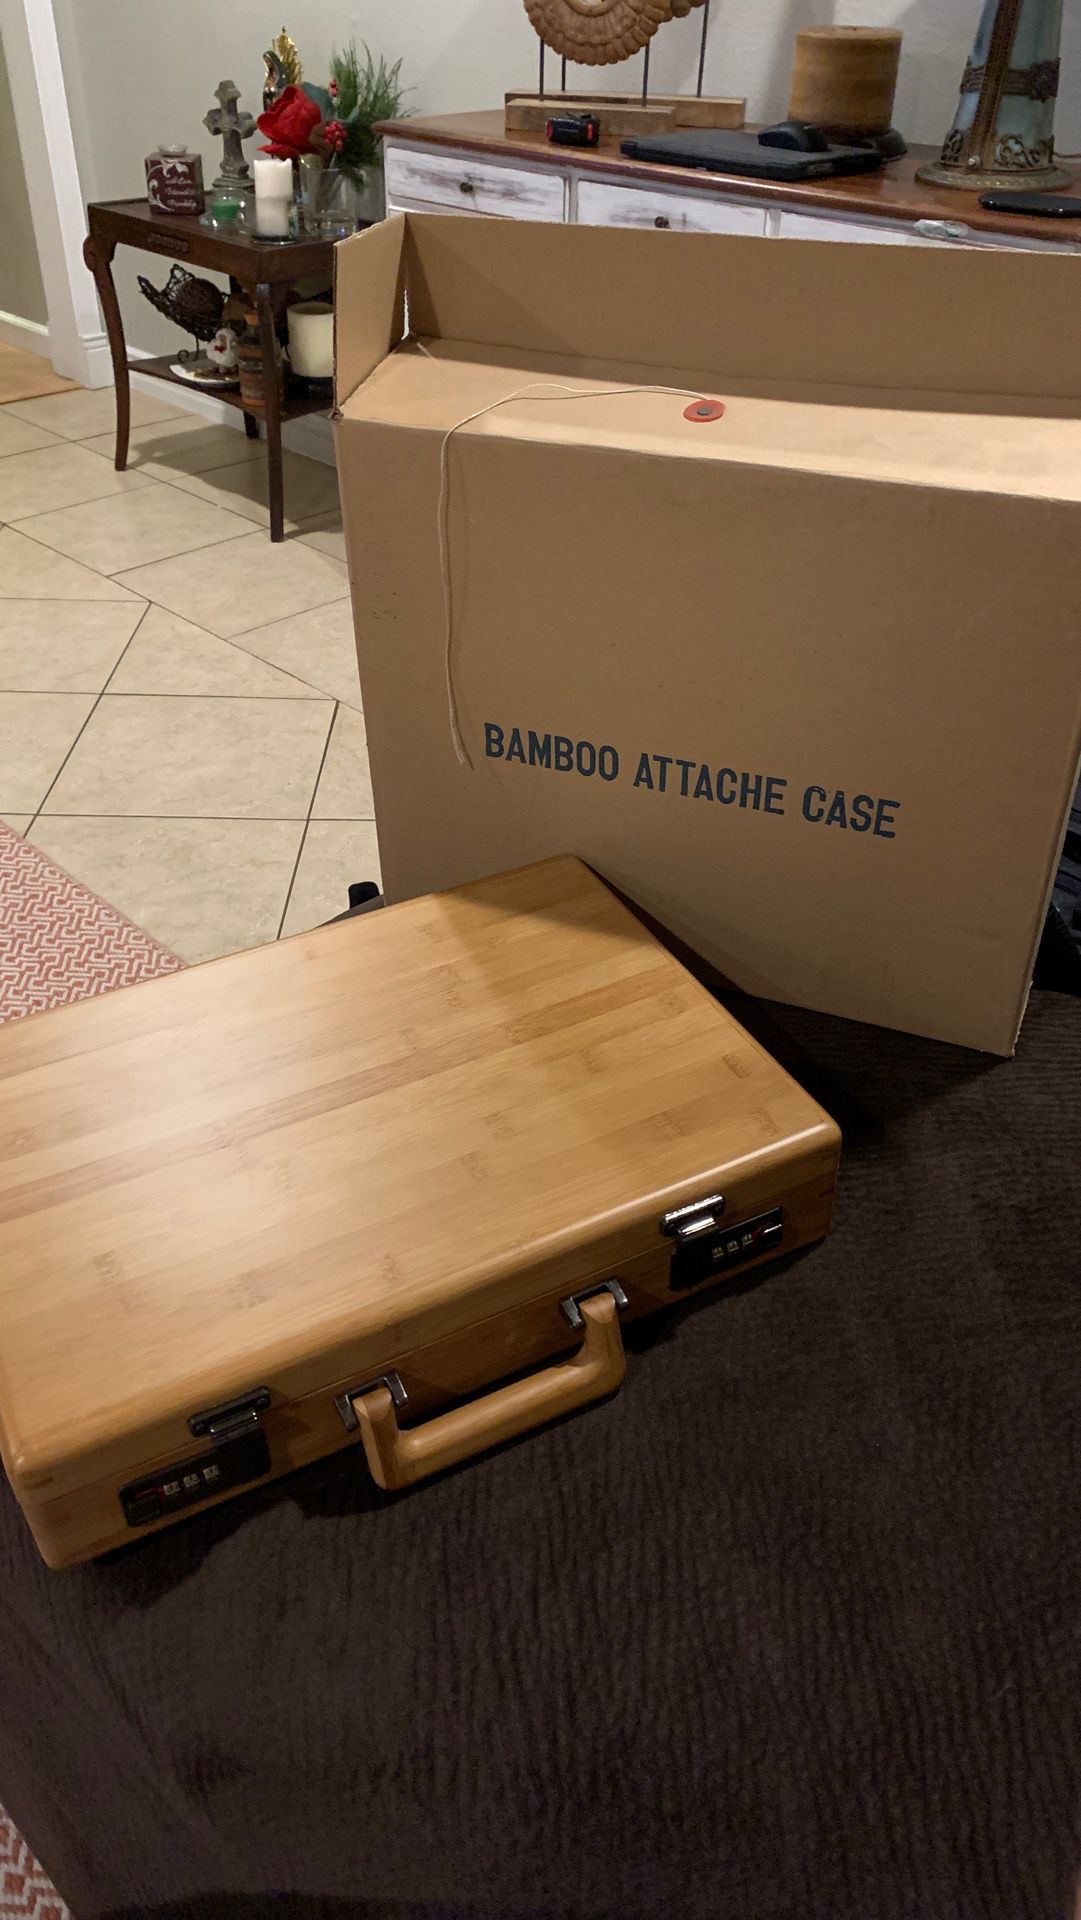 Bamboo attache case